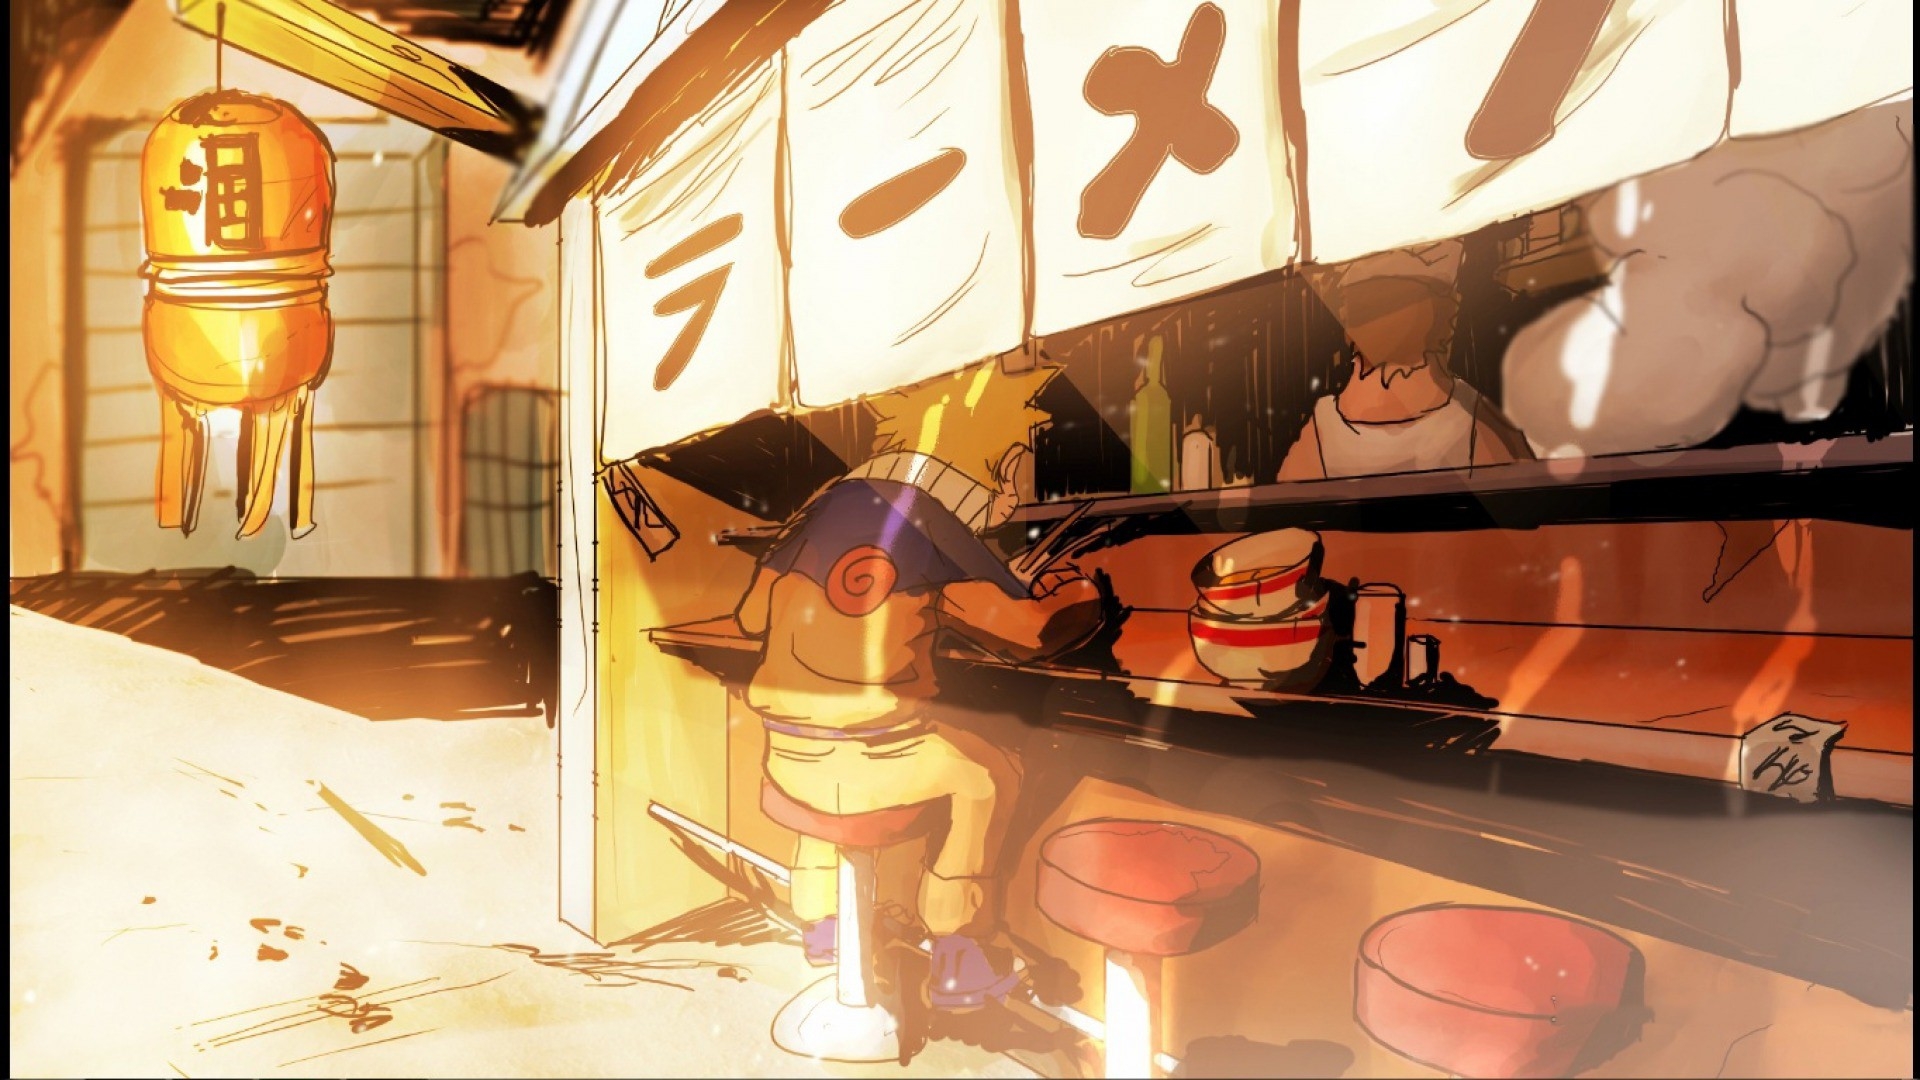 Naruto Uzumaki eating ramen at ichiraku ramen shop  Stable Diffusion   OpenArt